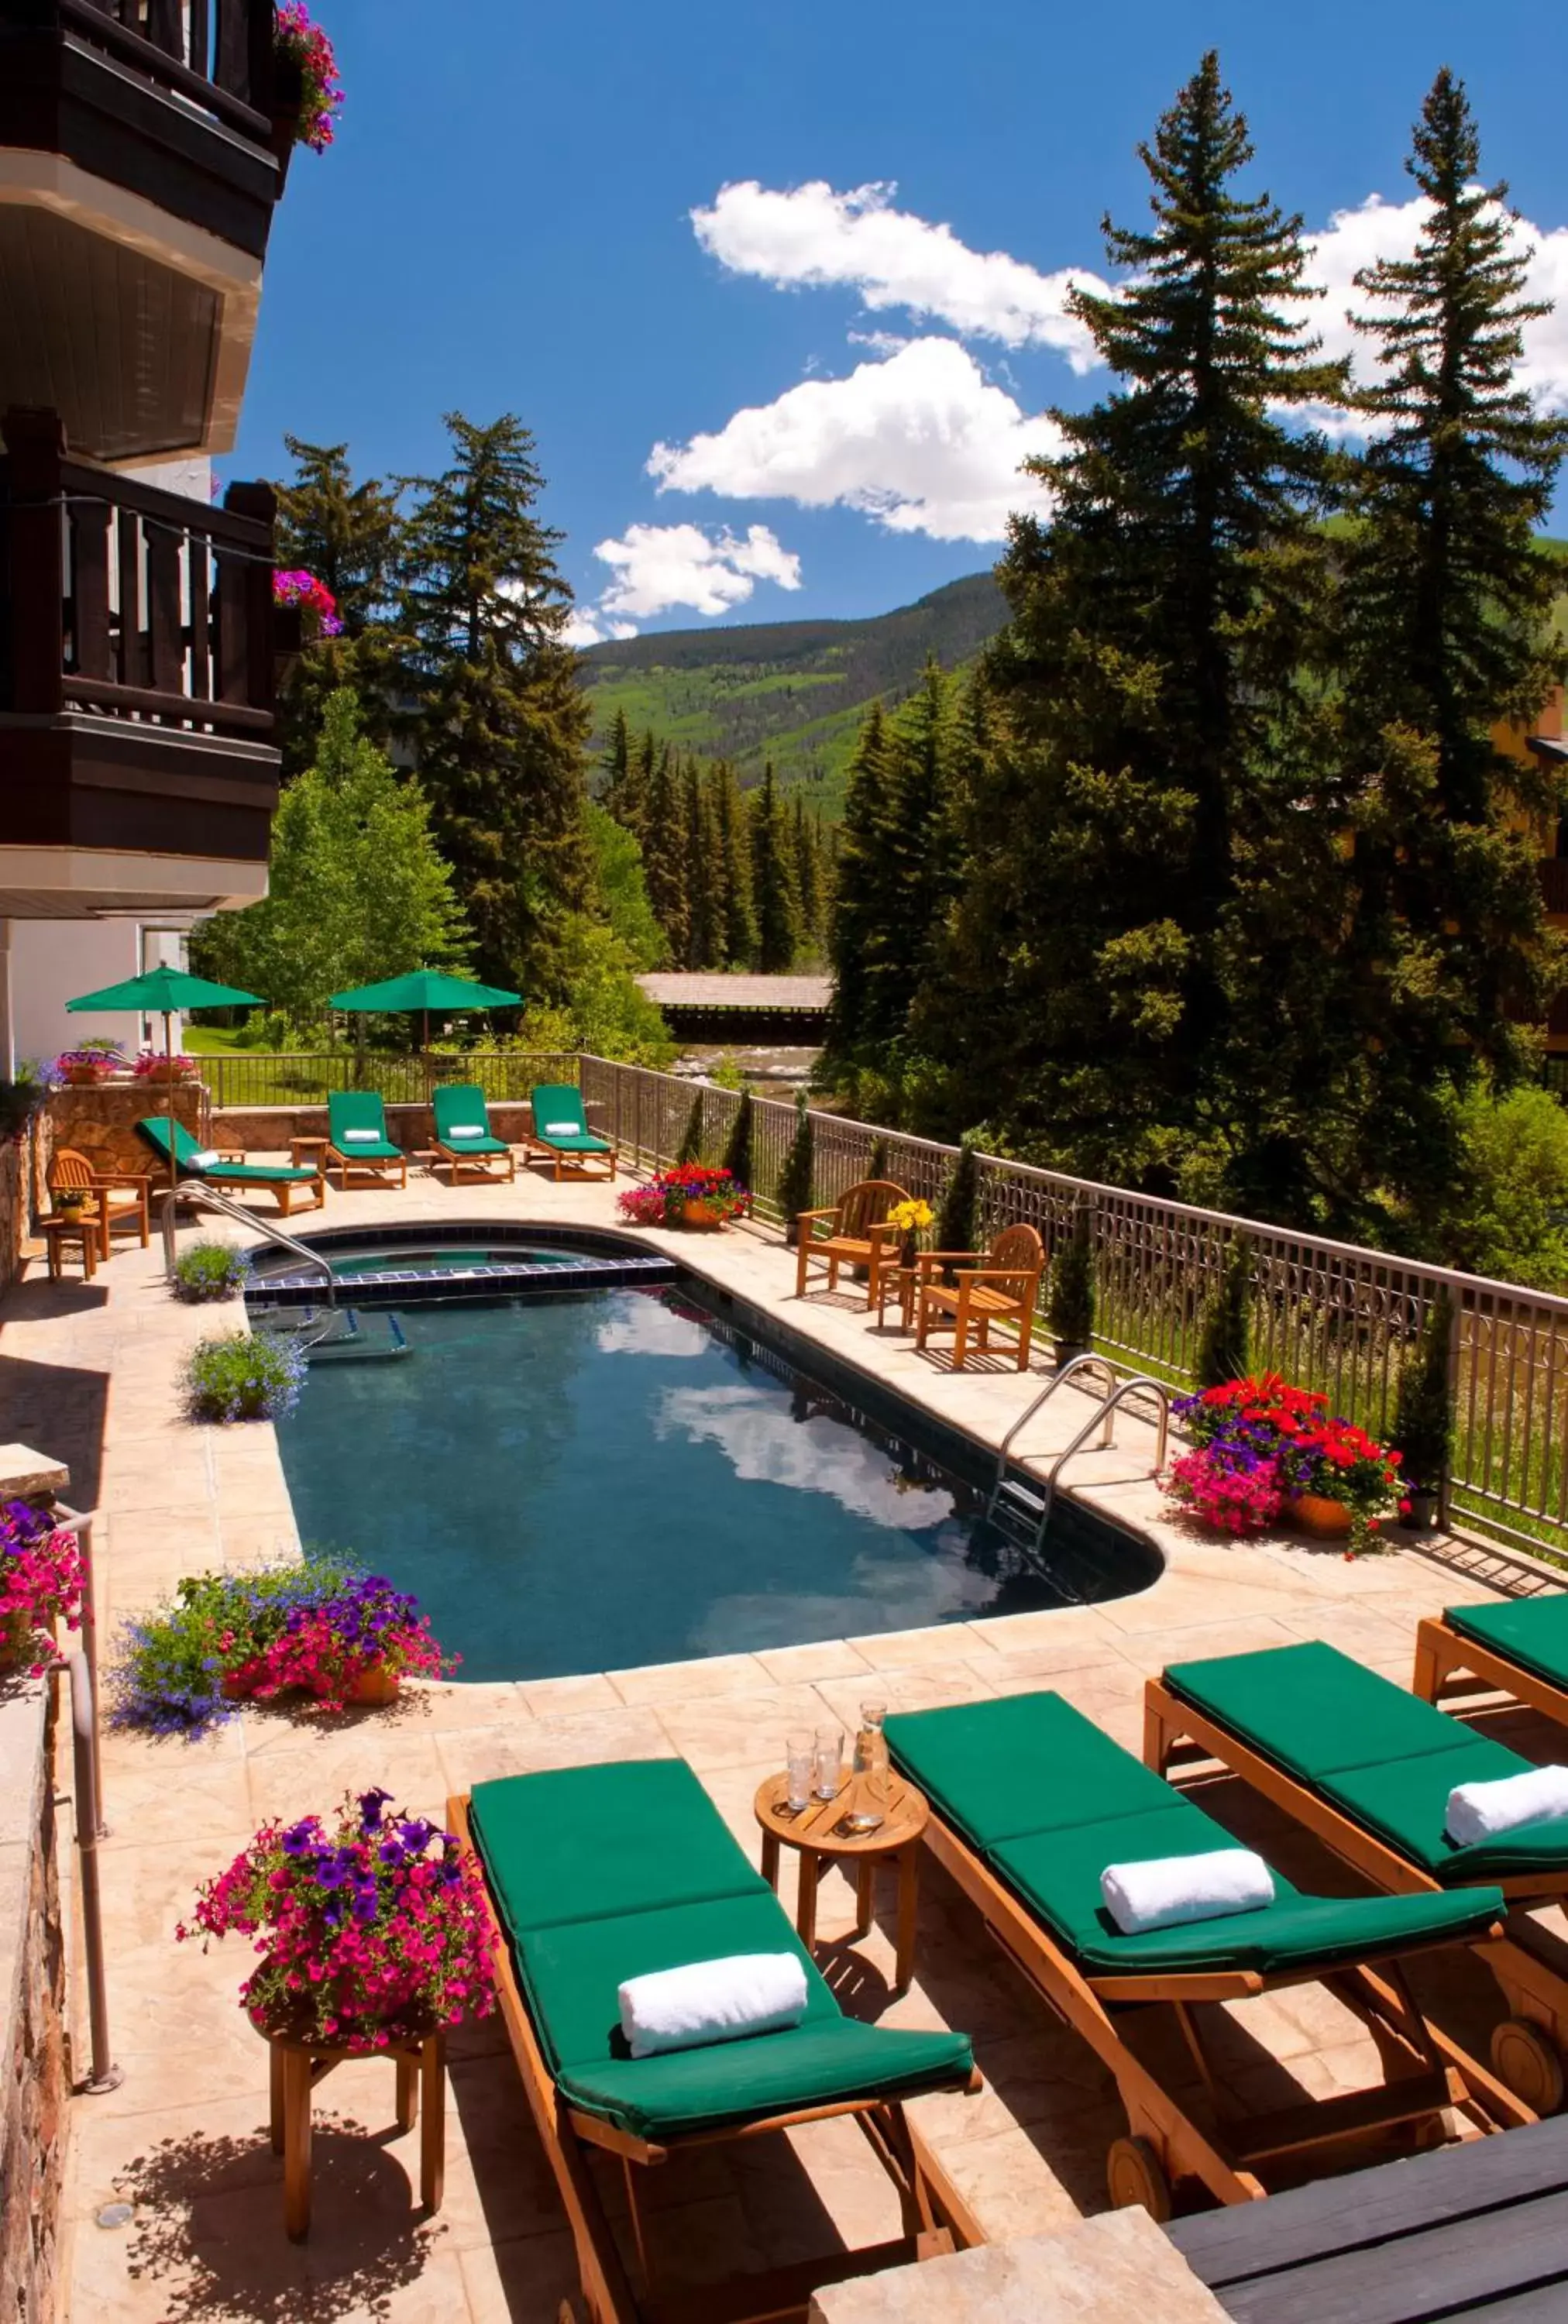 Swimming Pool in Austria Haus Hotel